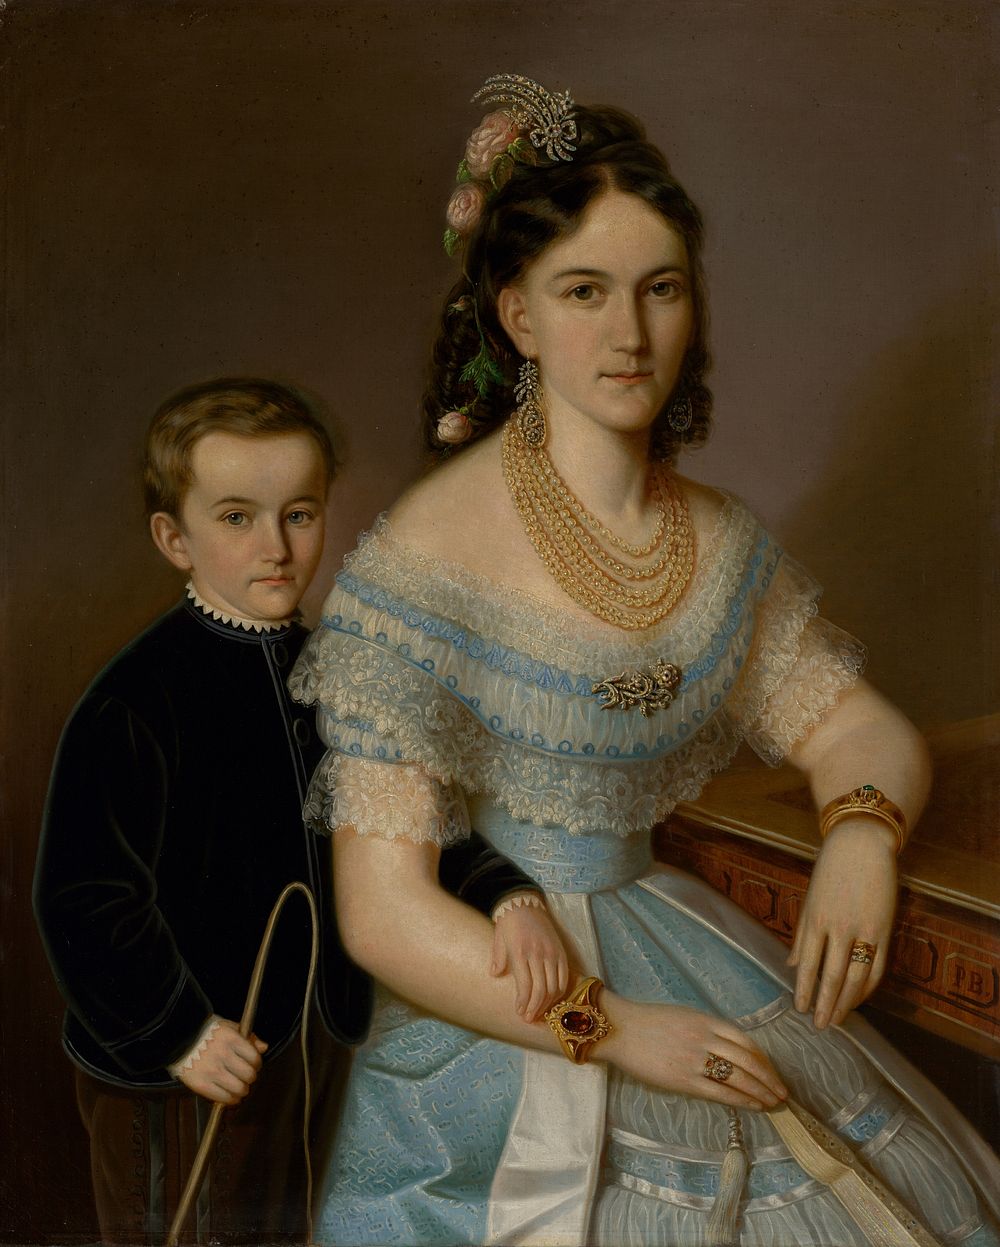 Portrait of ľudmila zmeškalová (nee pongráczová) with son jozef, Peter Michal Bohuň